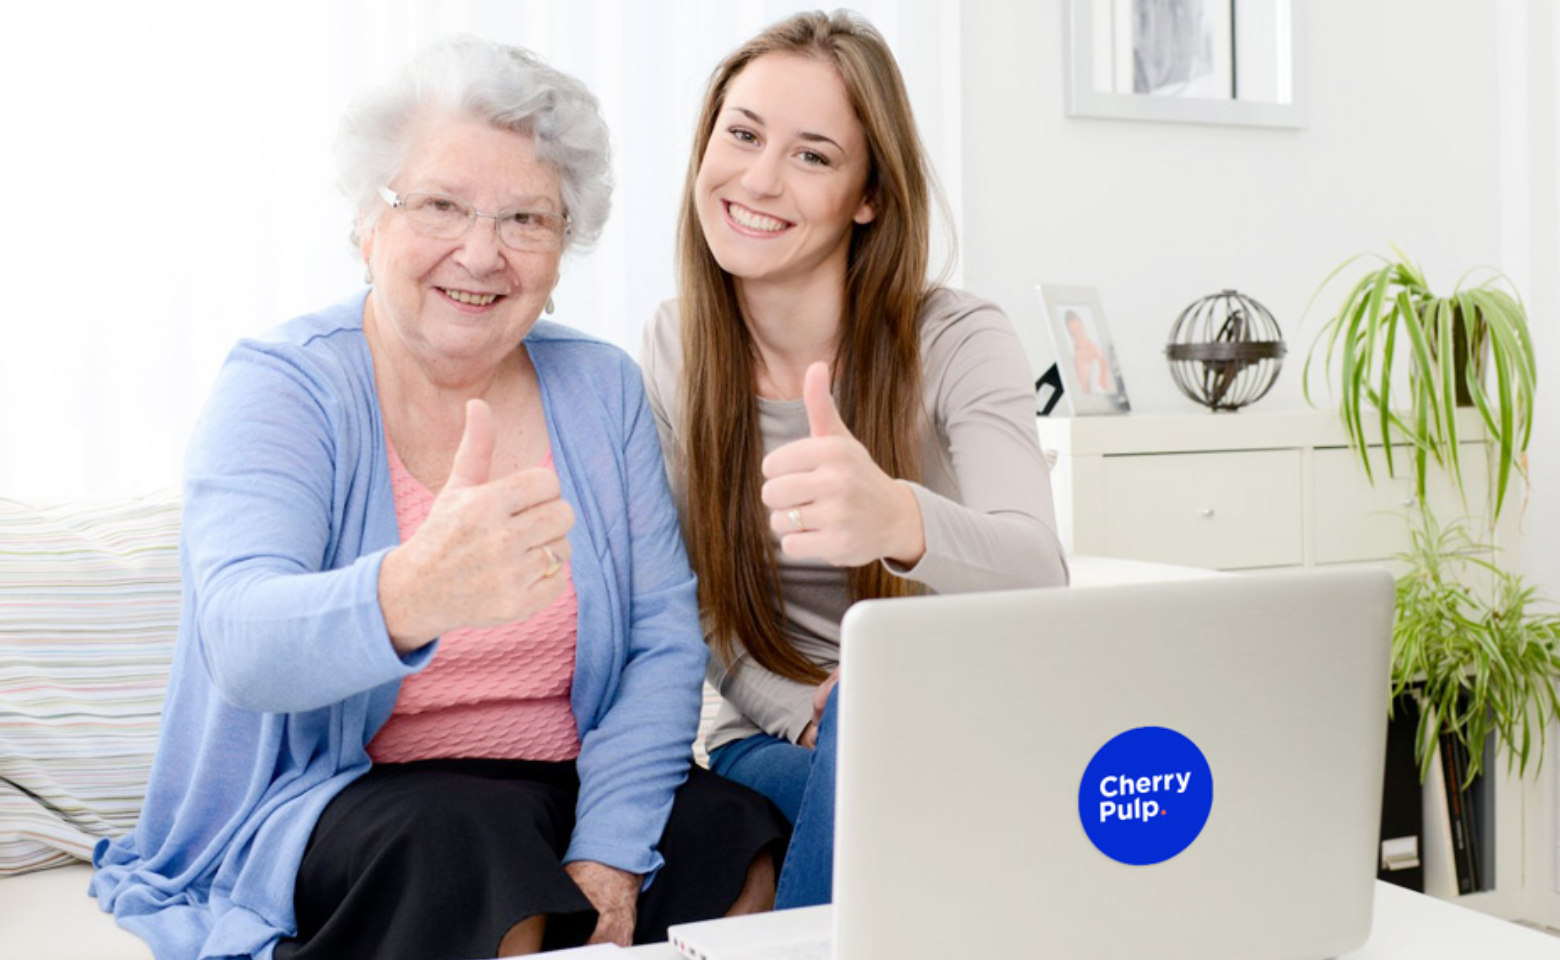 Comment fonctionne un site internet, expliqué à ta grand-mère